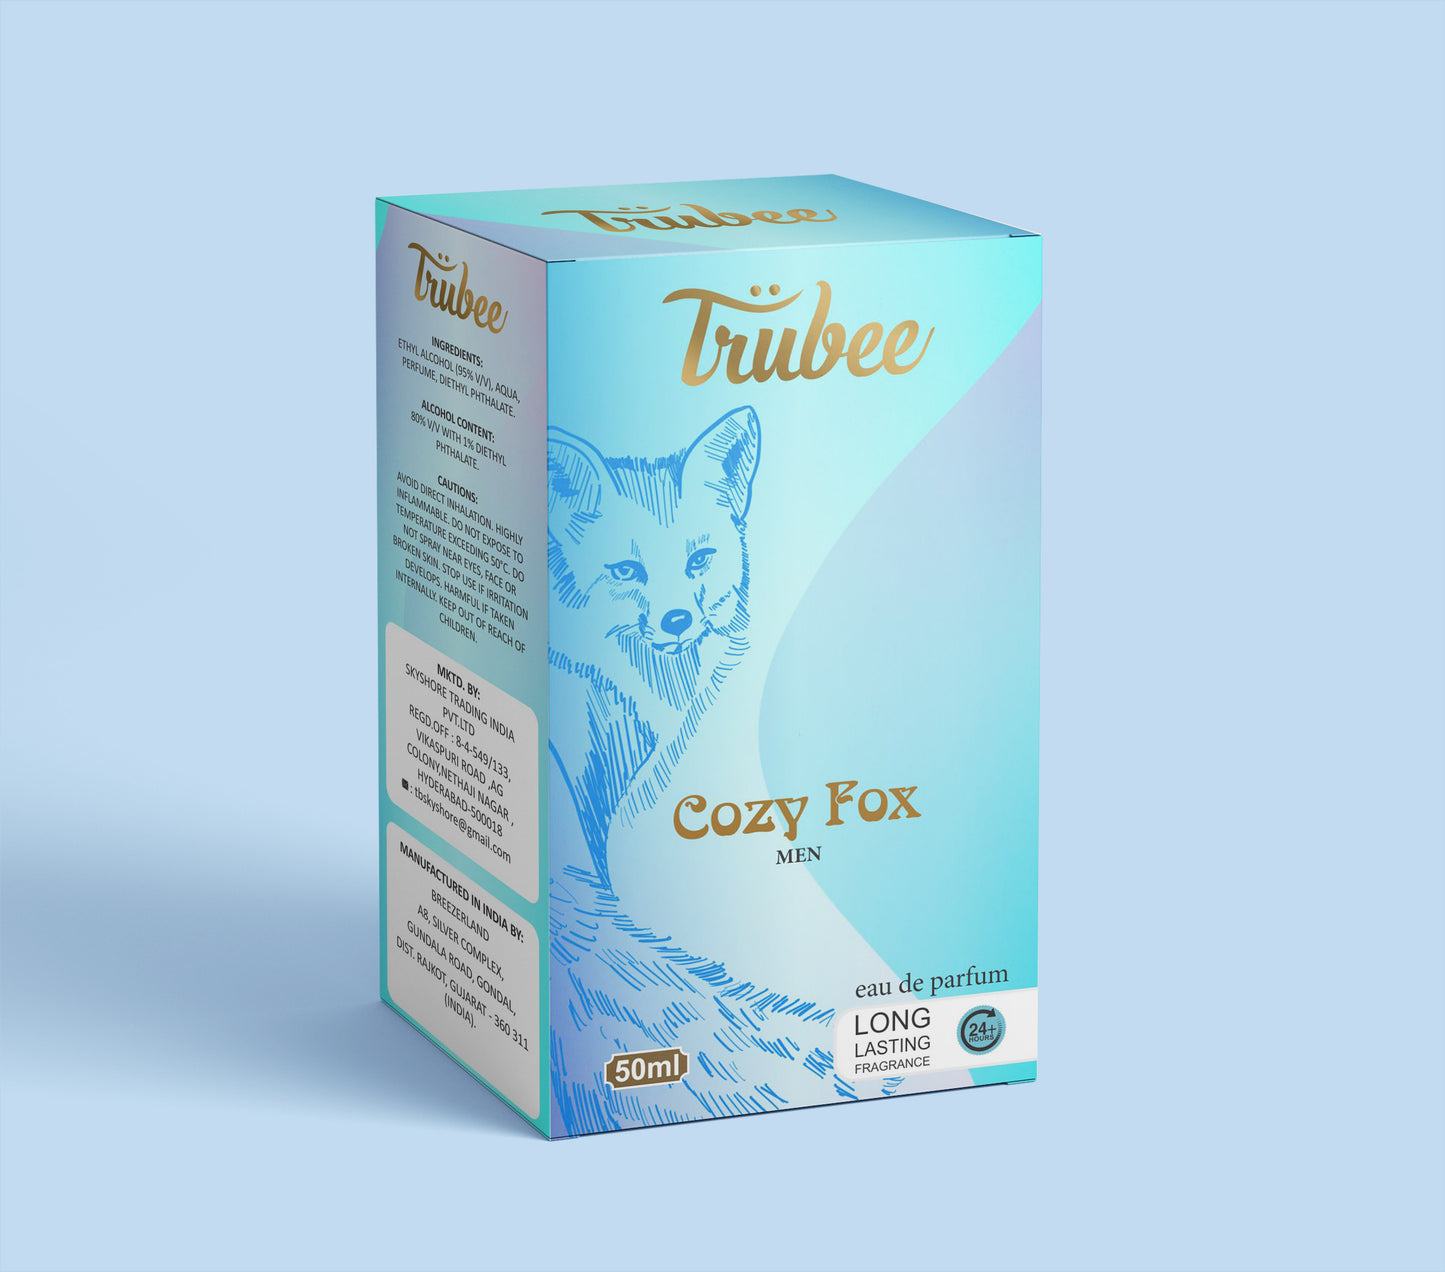 Trubee Cozy Fox Men Perfume